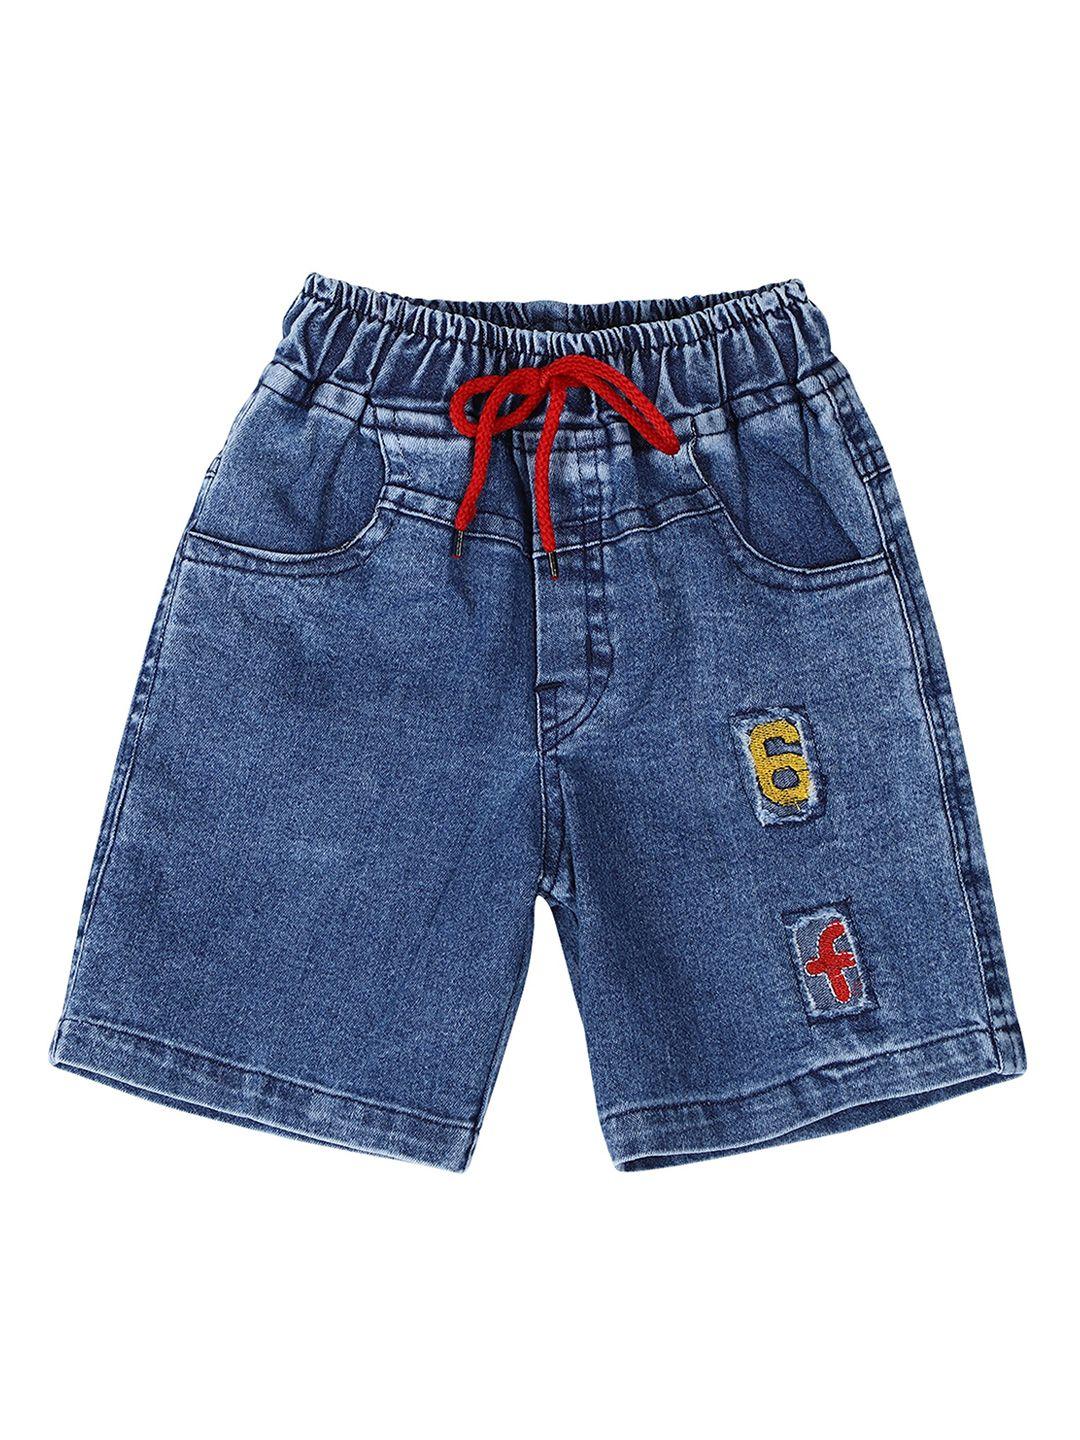 cremlin clothing unisex kids blue washed denim shorts